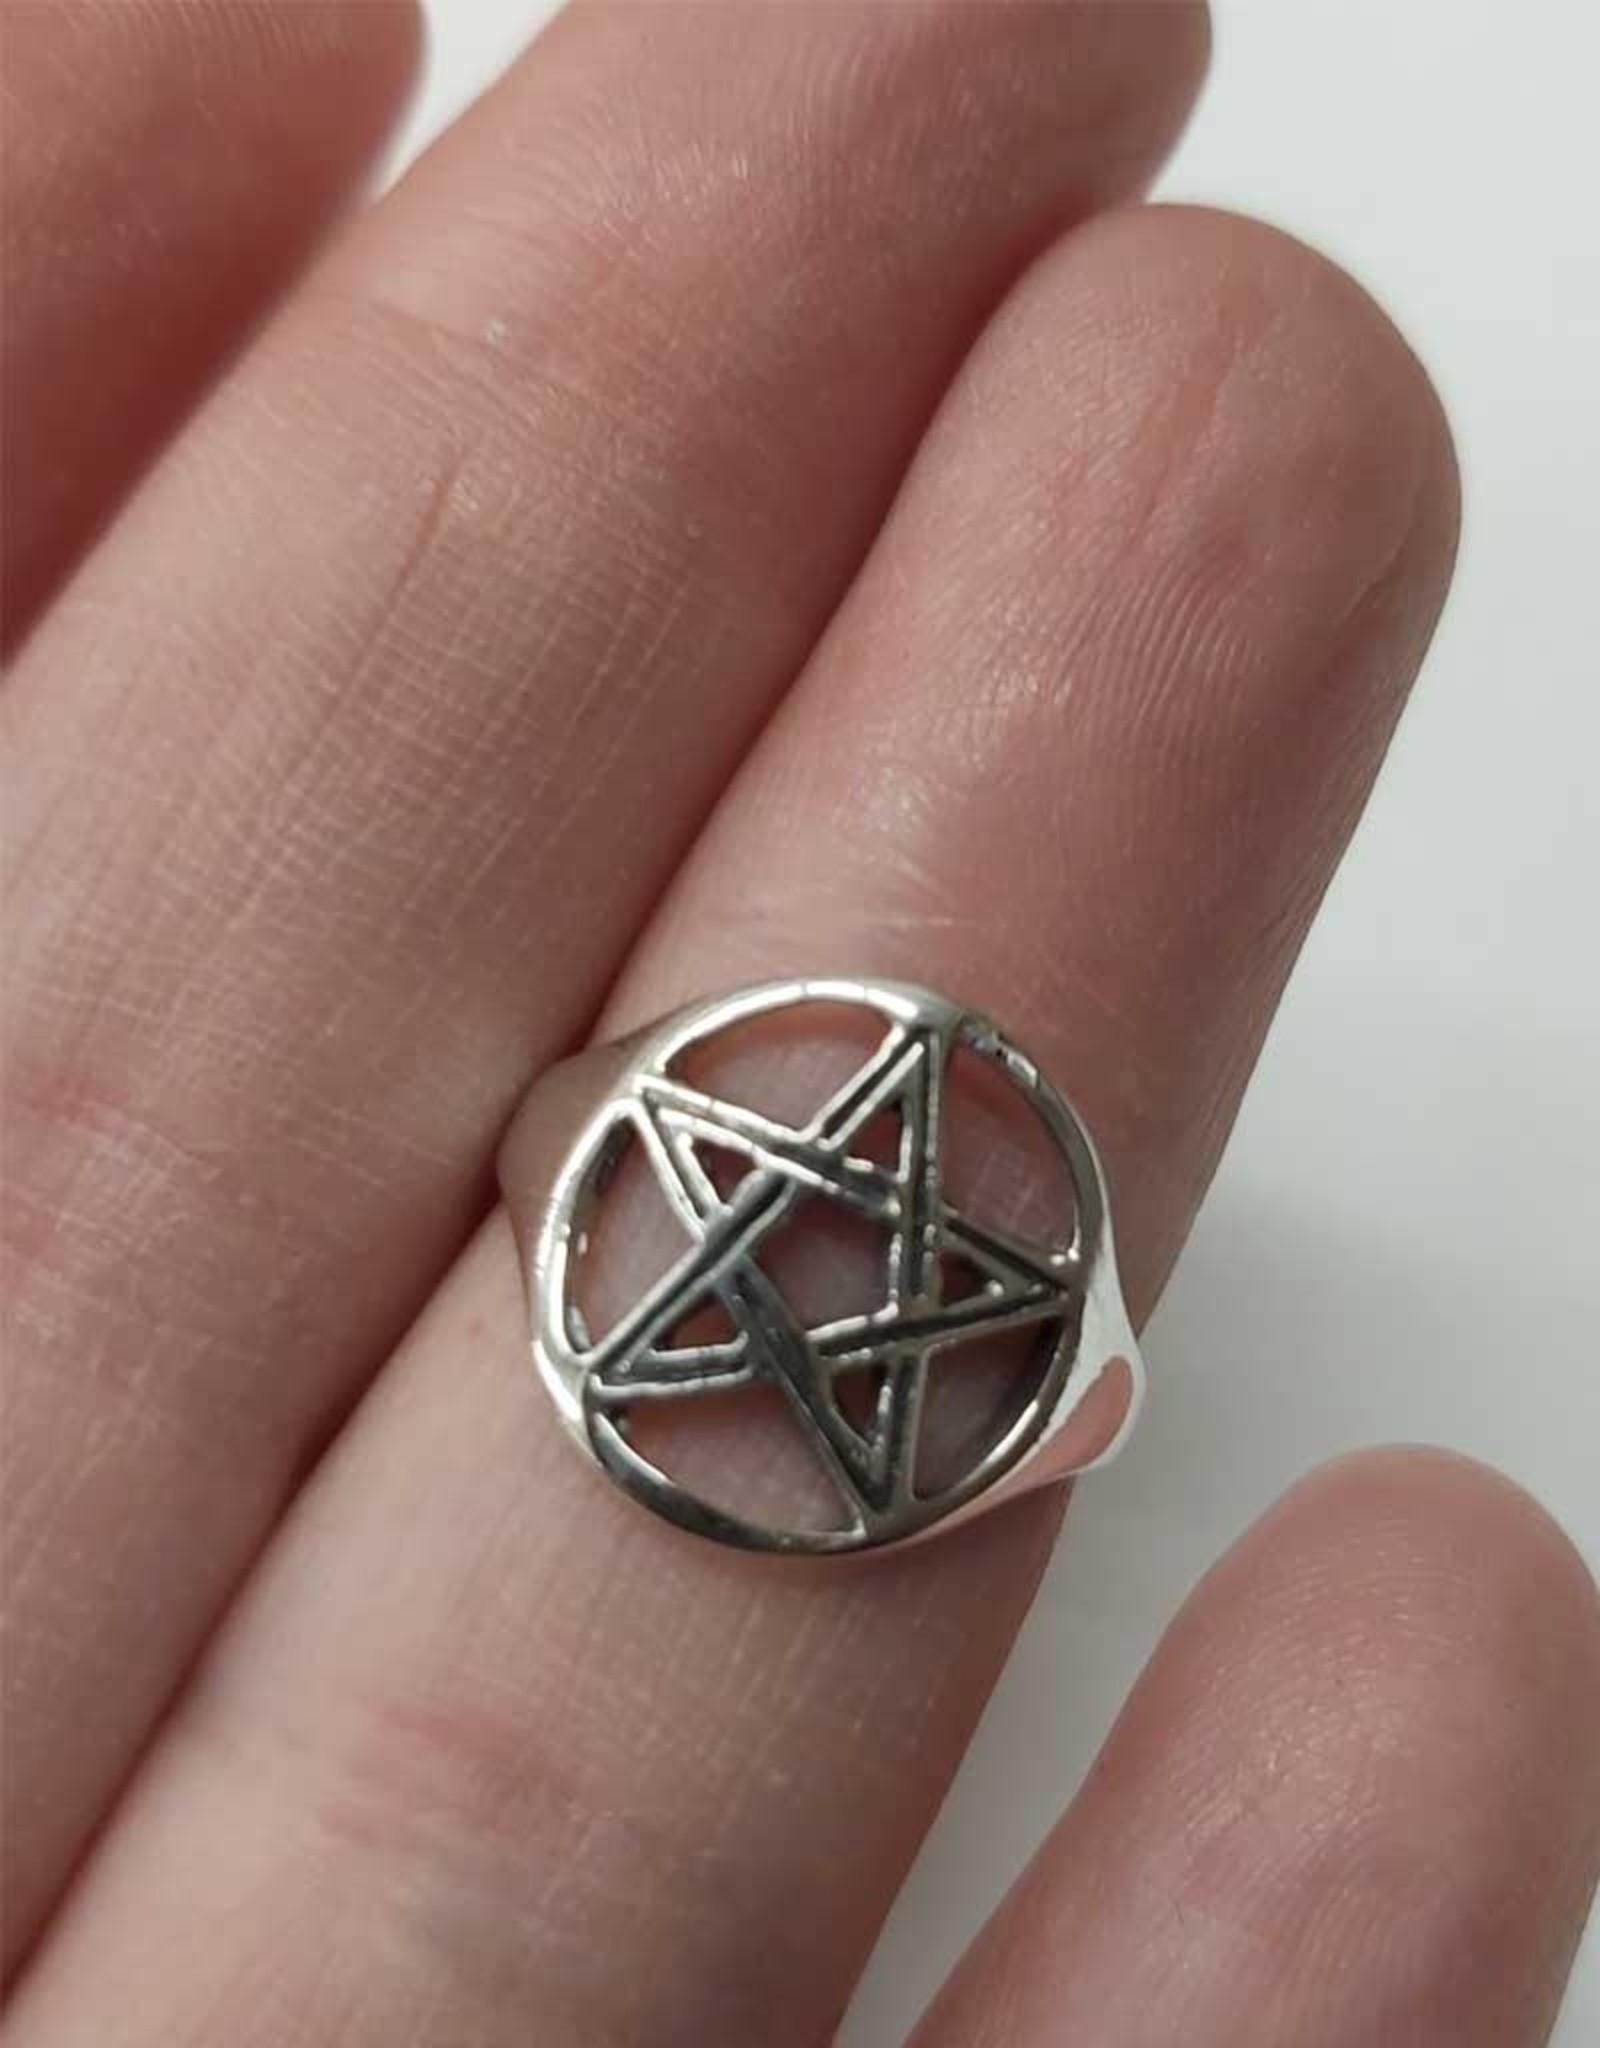 Large Pentagram Ring - Size 6 Sterling Silver